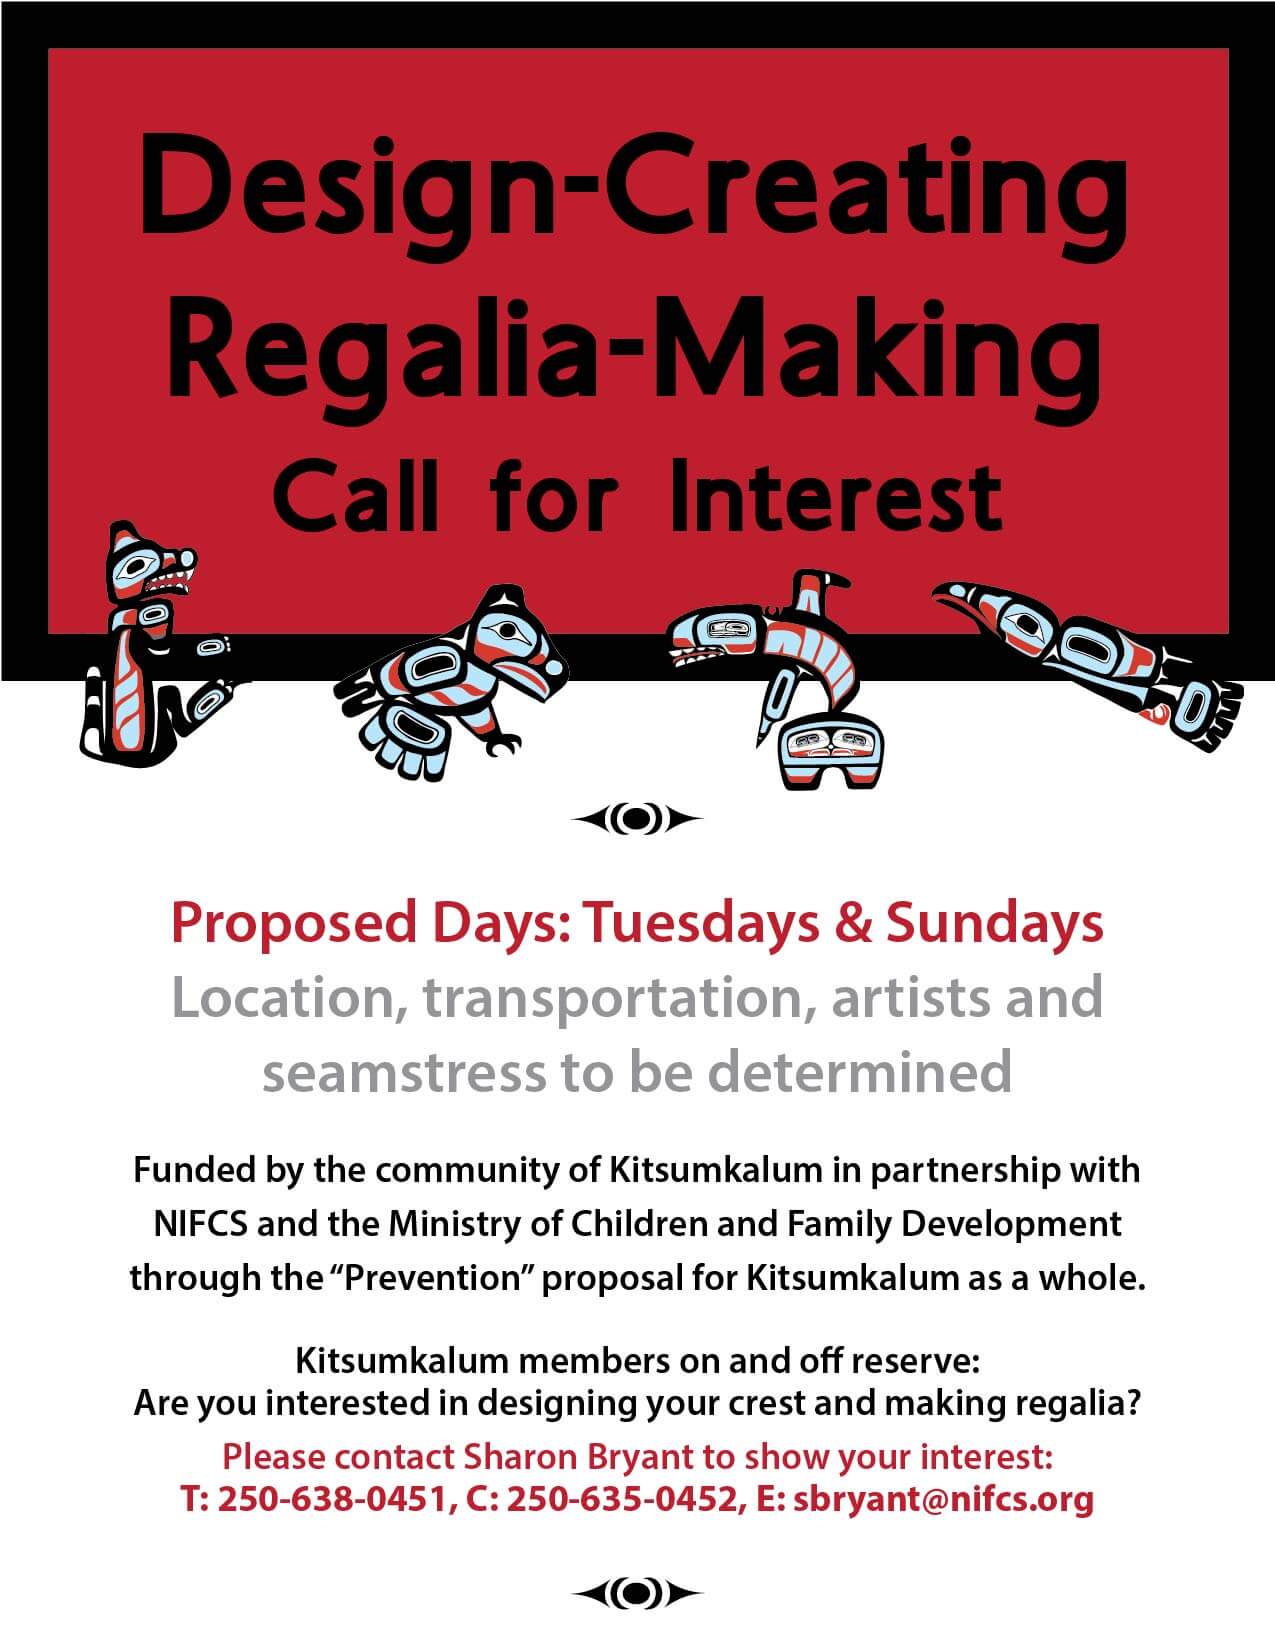 Call For Interest in Design and Regalia Making – Kitsumkalum Members